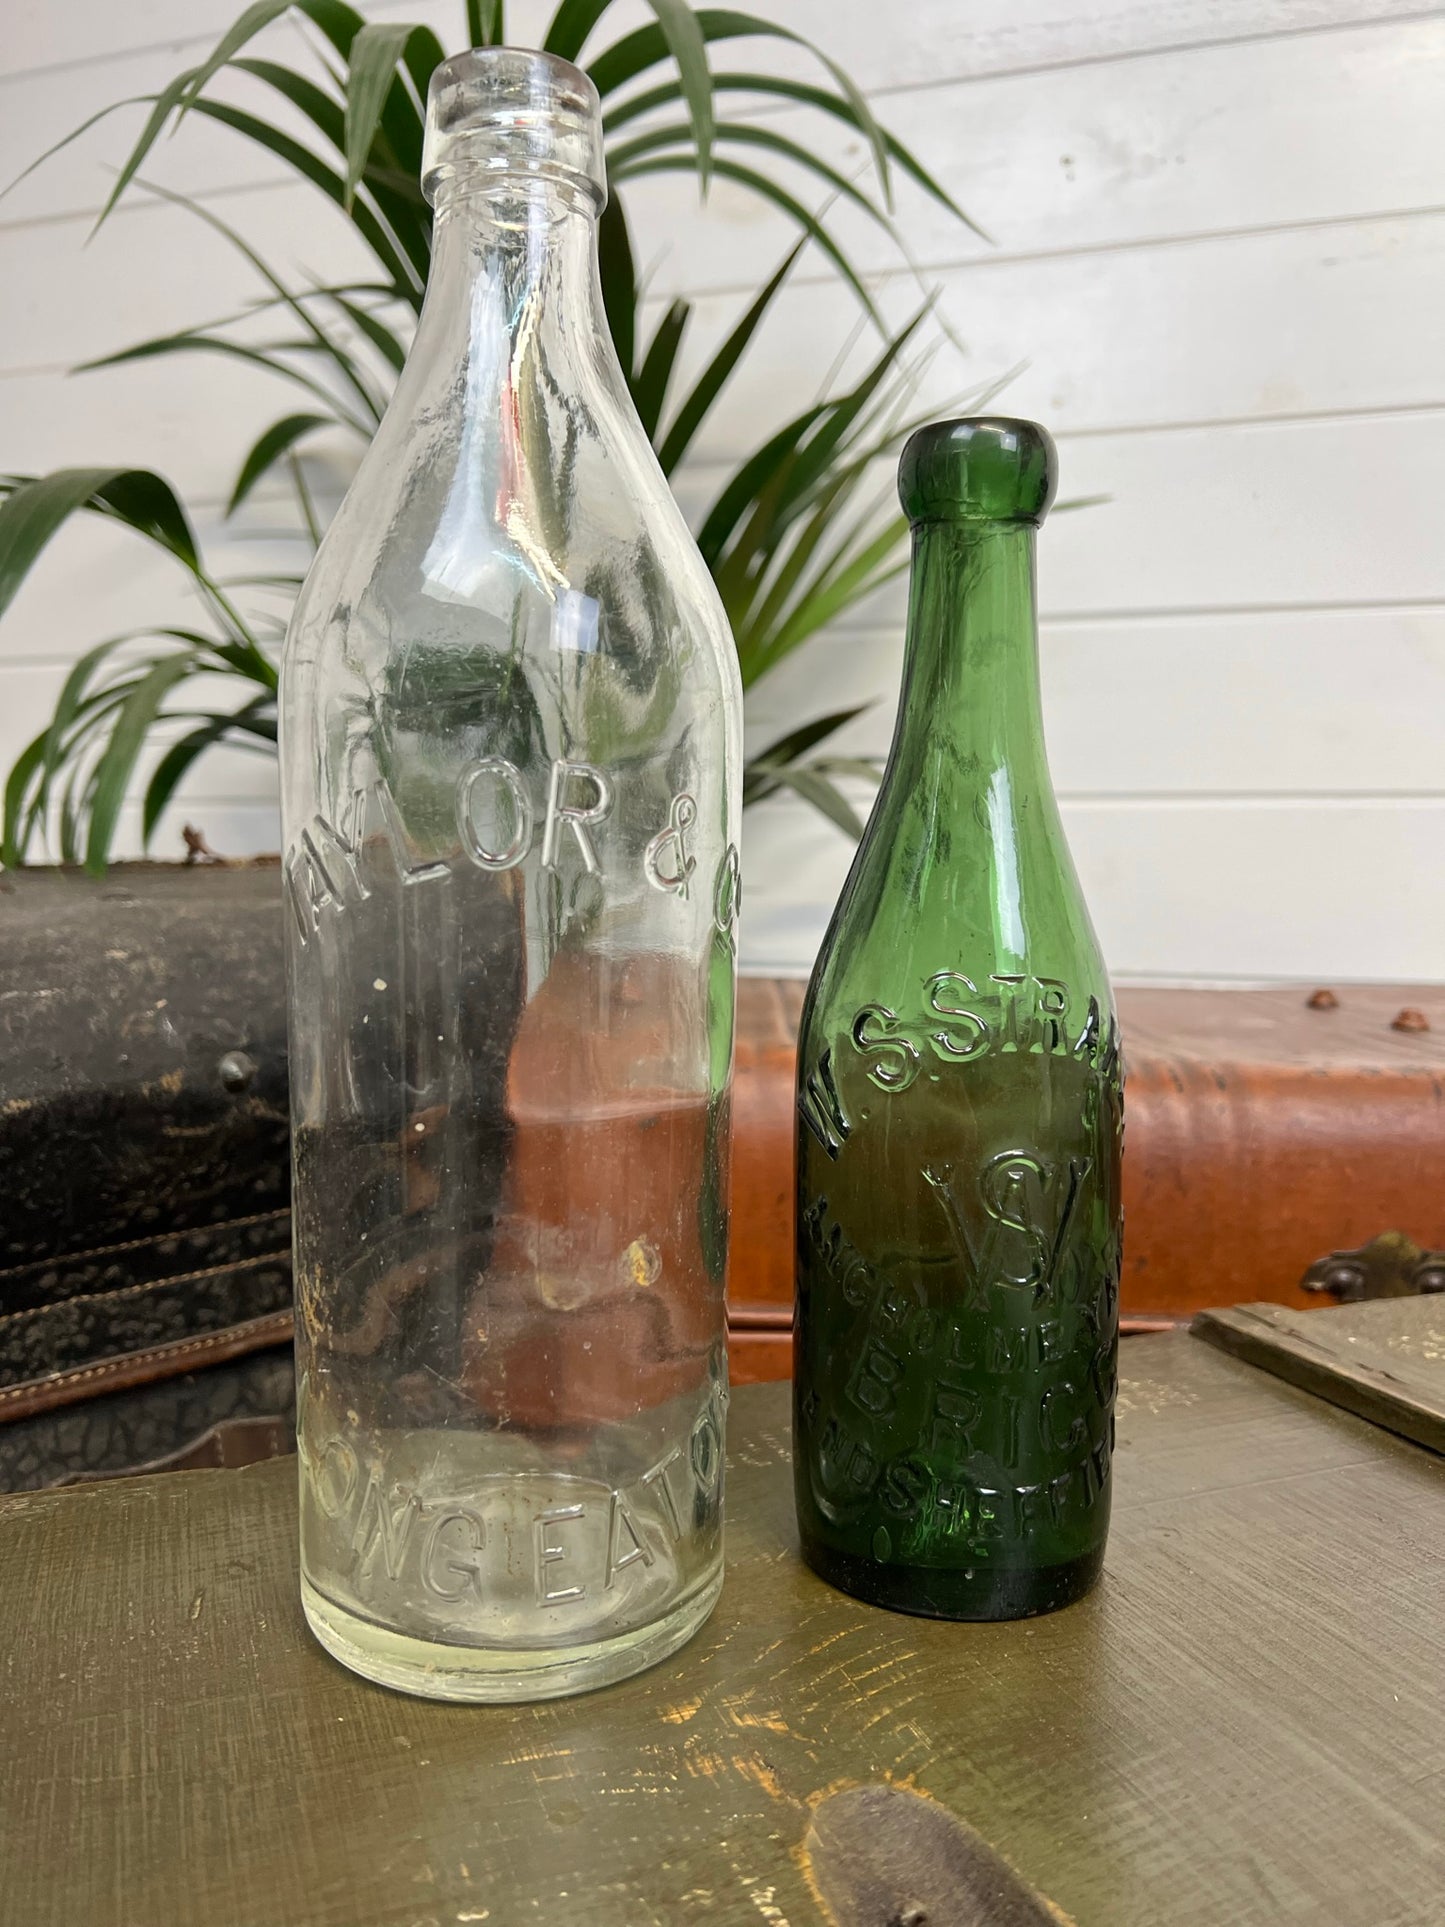 2x Vintage Large Glass Bottles Glass Vase Shelf Decor Rustic Display Home Decor